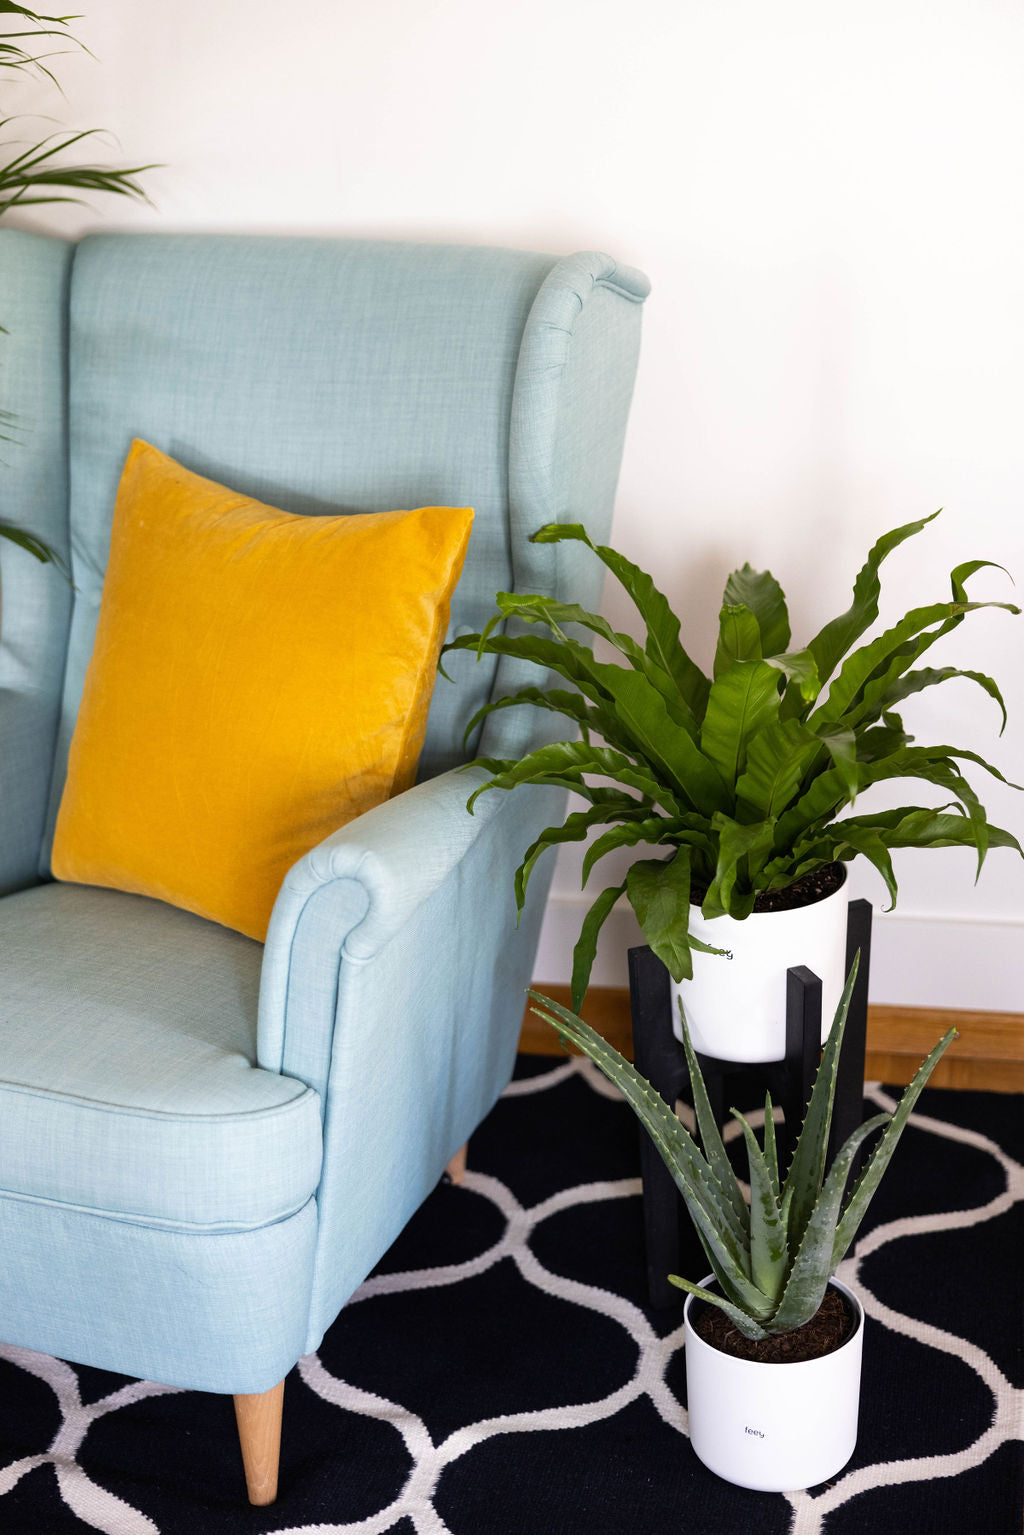 Aloe vera in weissem Topf auf gemusterten Teppich neben einem gewellten Nestfarn im dunklen Pflanzenständer, beide neben einem hellblauen Sofa